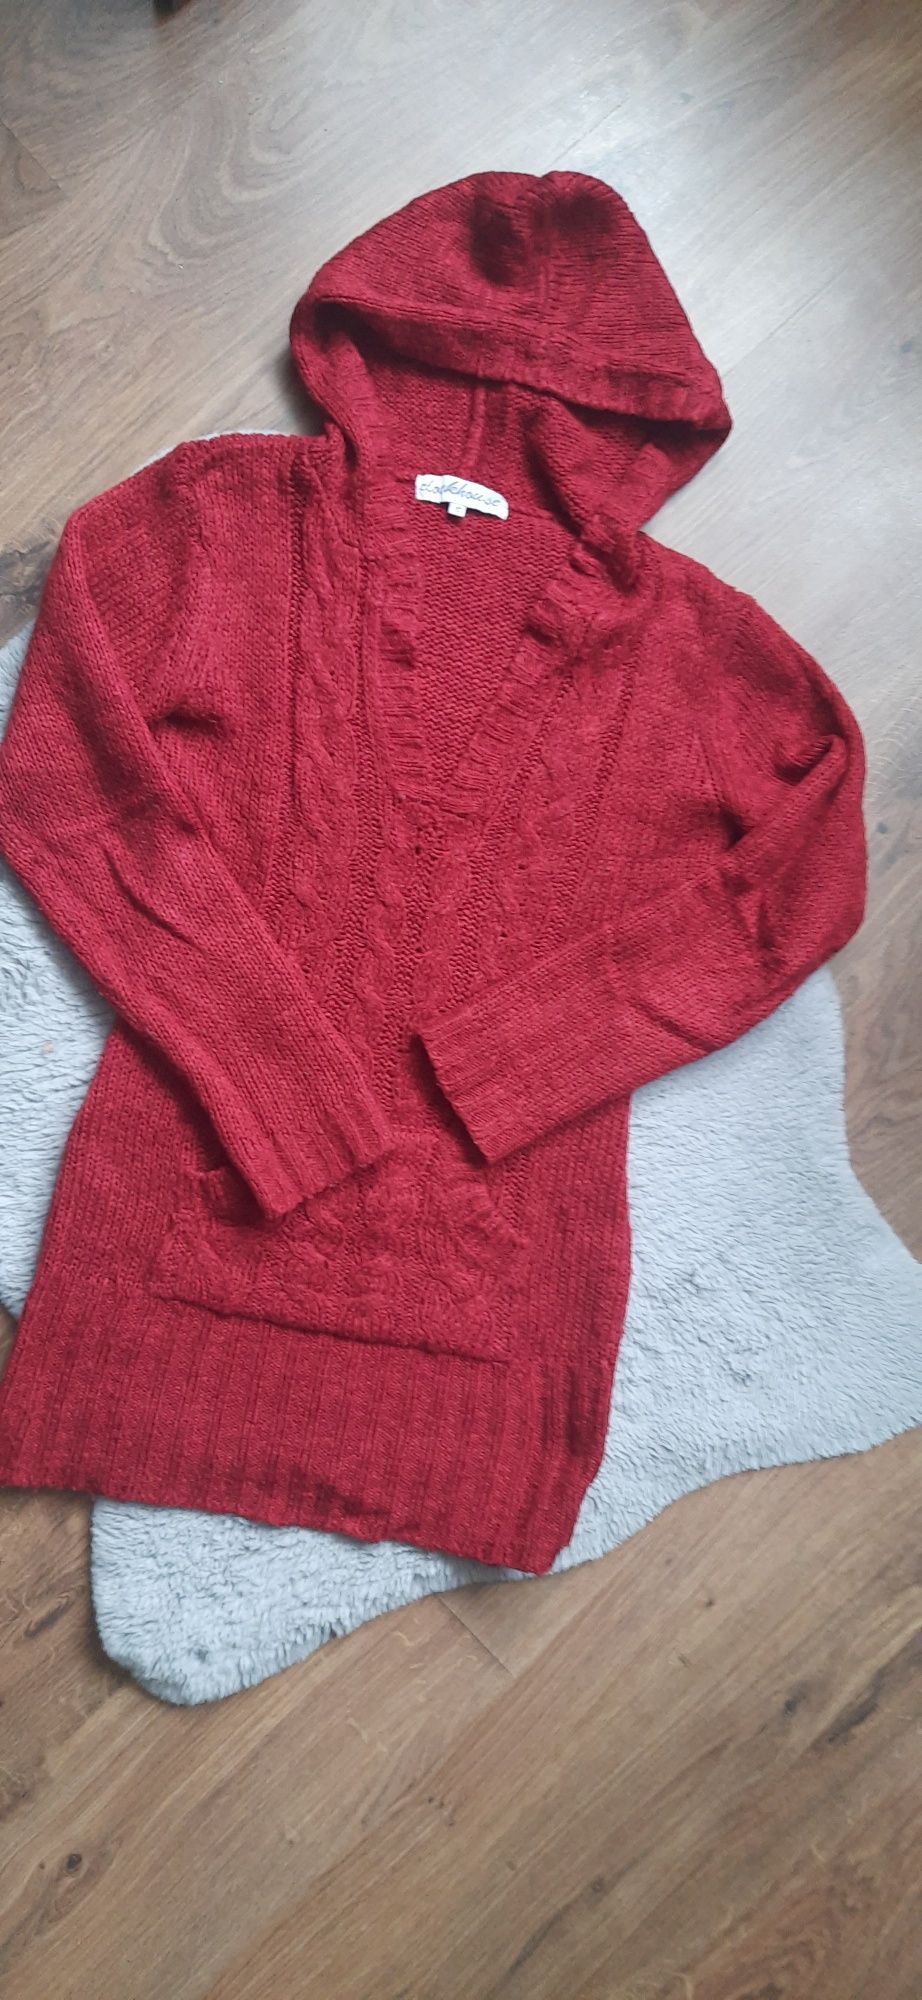 Damski czerwony sweter